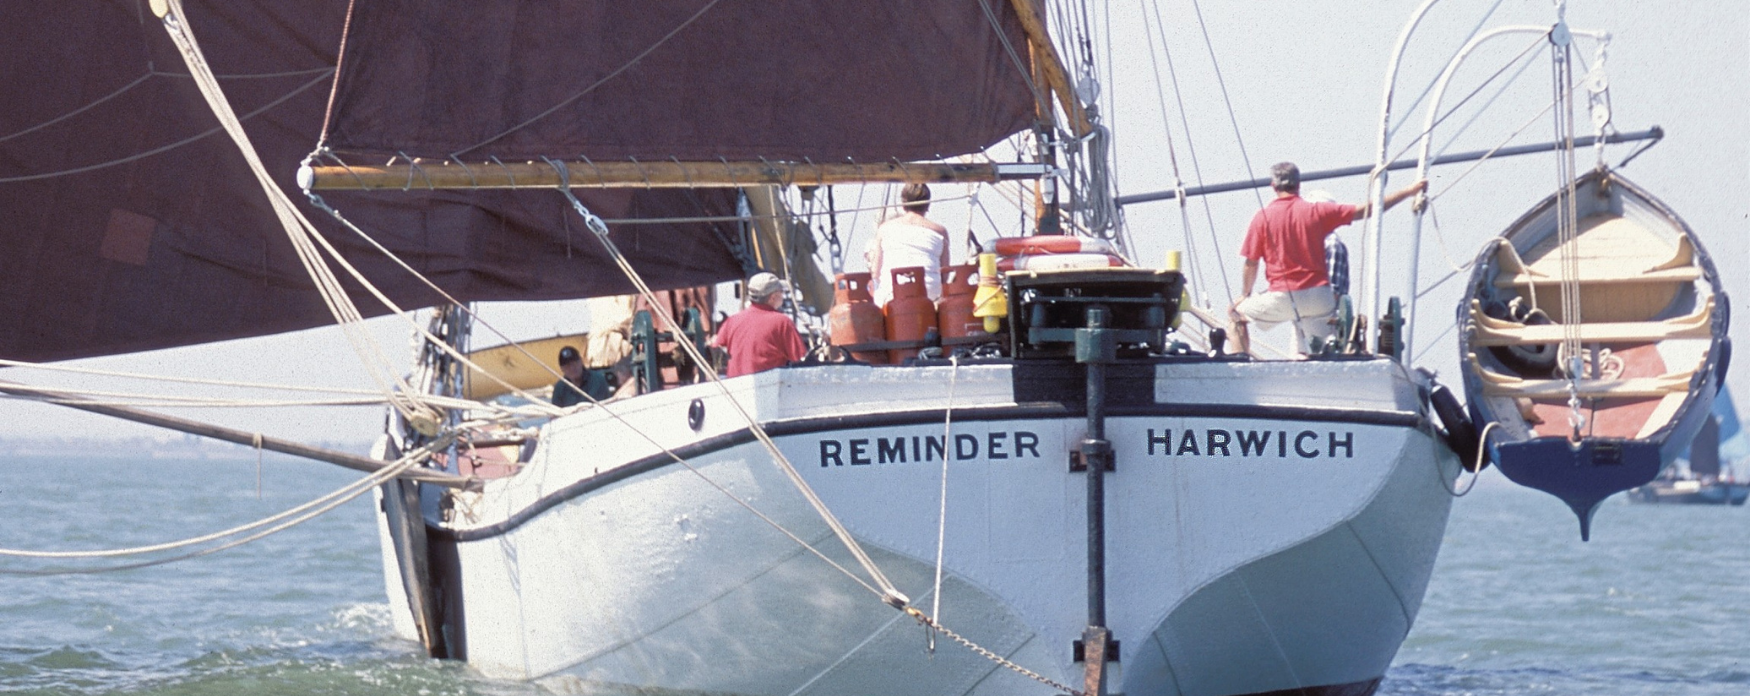 Barge Reminder at Maldon